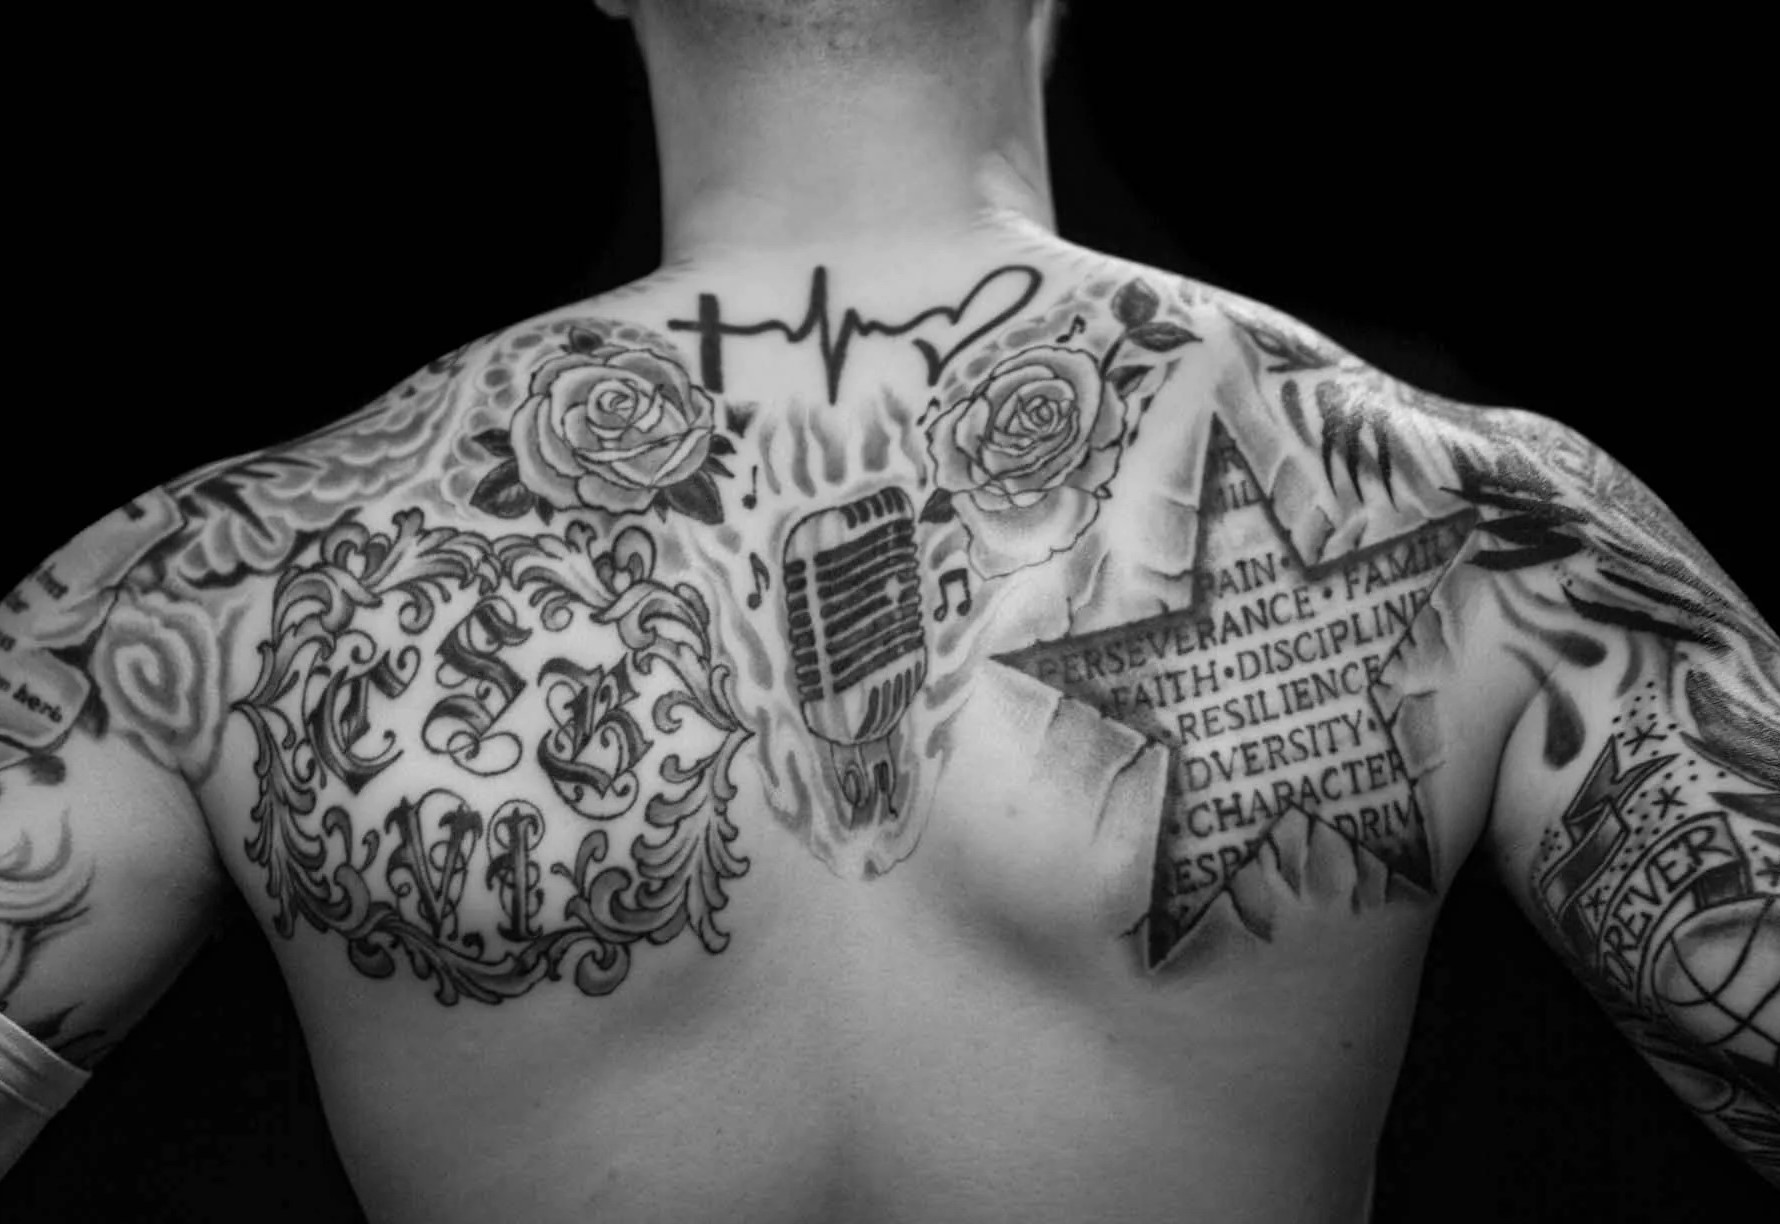 Damian Lillard Back Tattoos